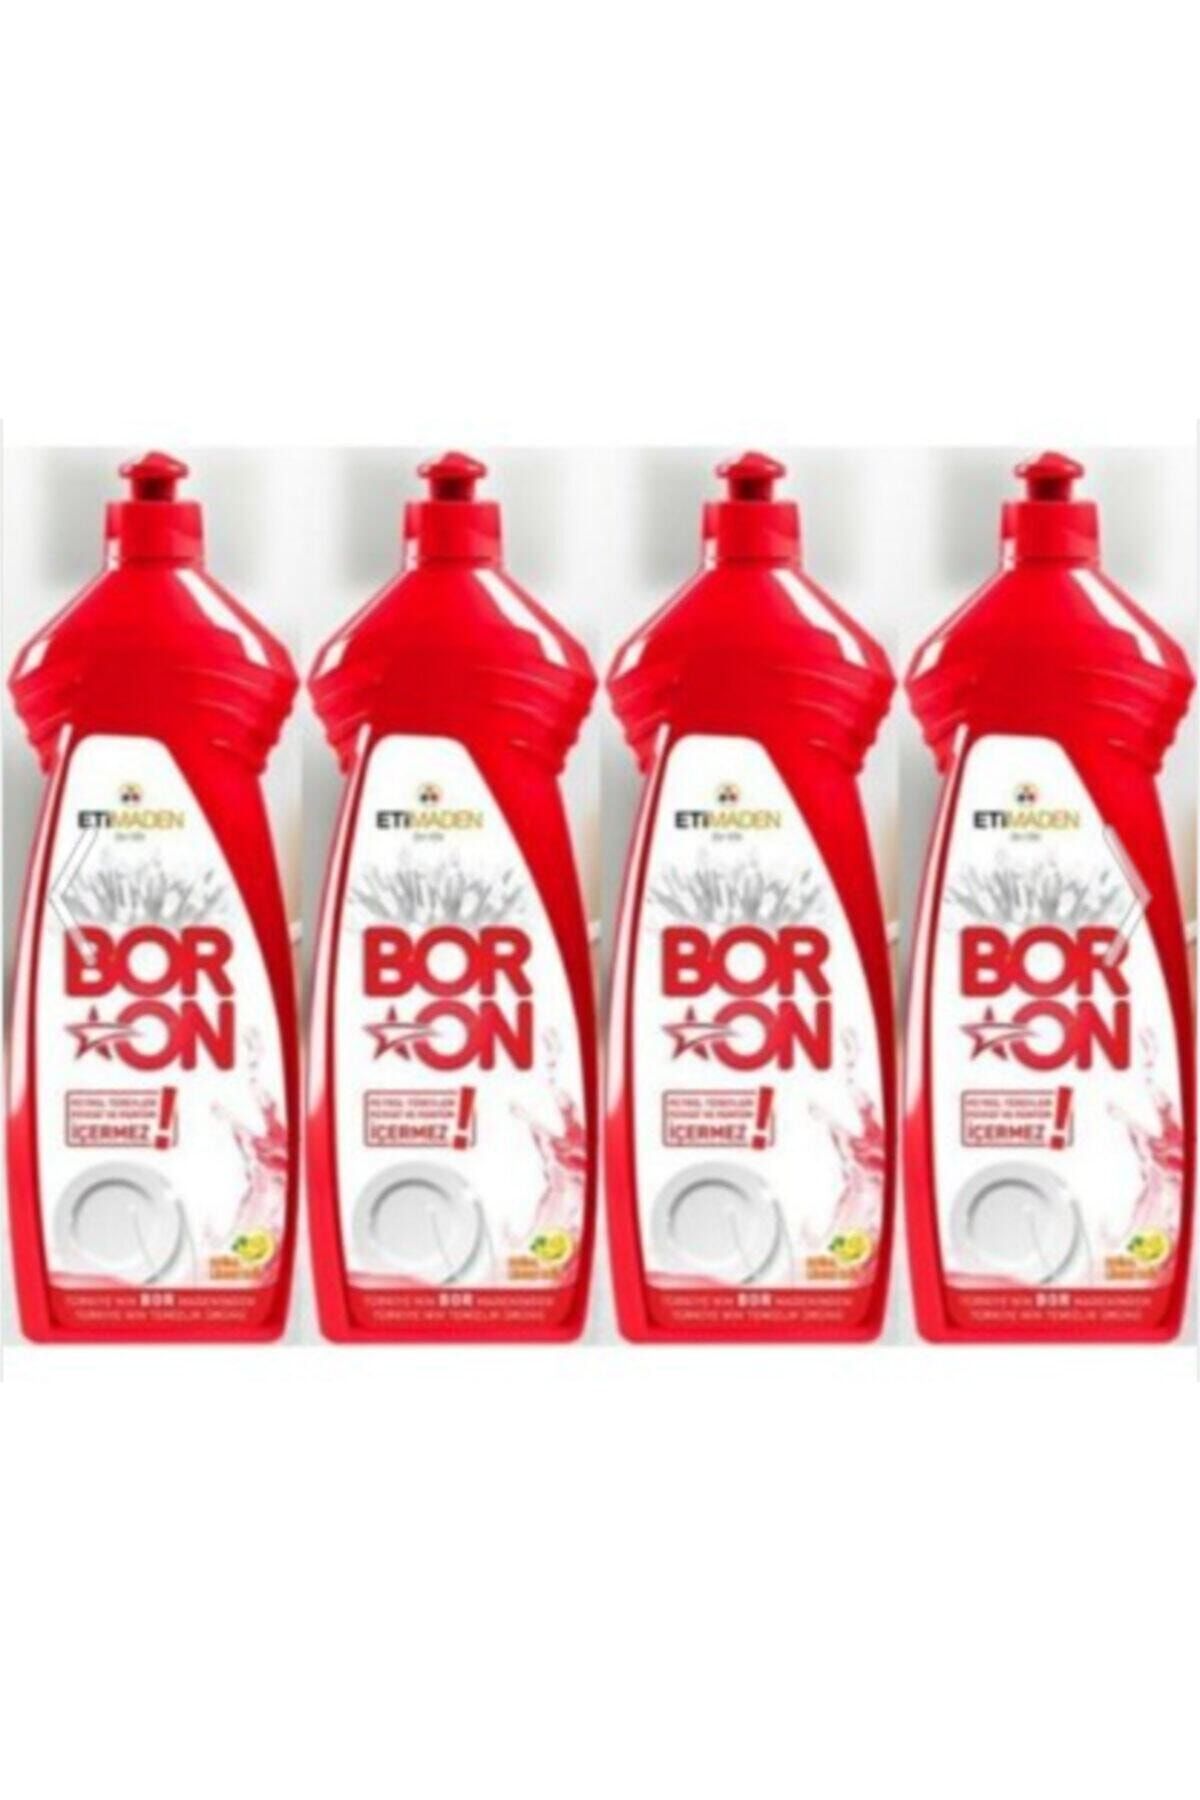 Boron Boron Elde Yıkama Bulaşık Temizlik Ürünü 650 ml 4 Adet